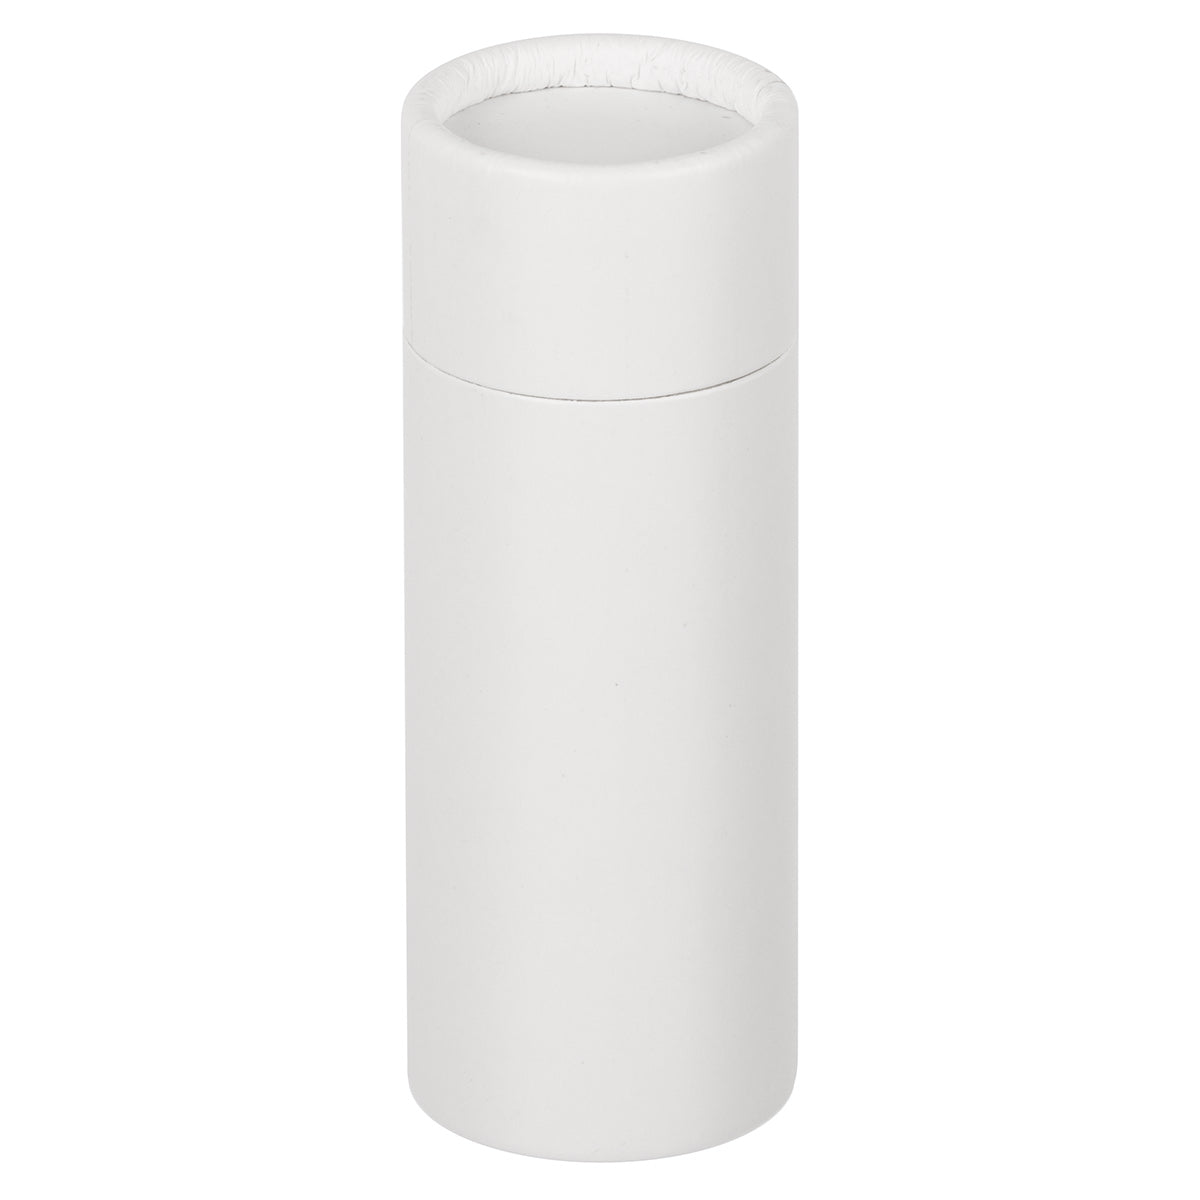 Cardboard  Deodorant Tube - White 60ml